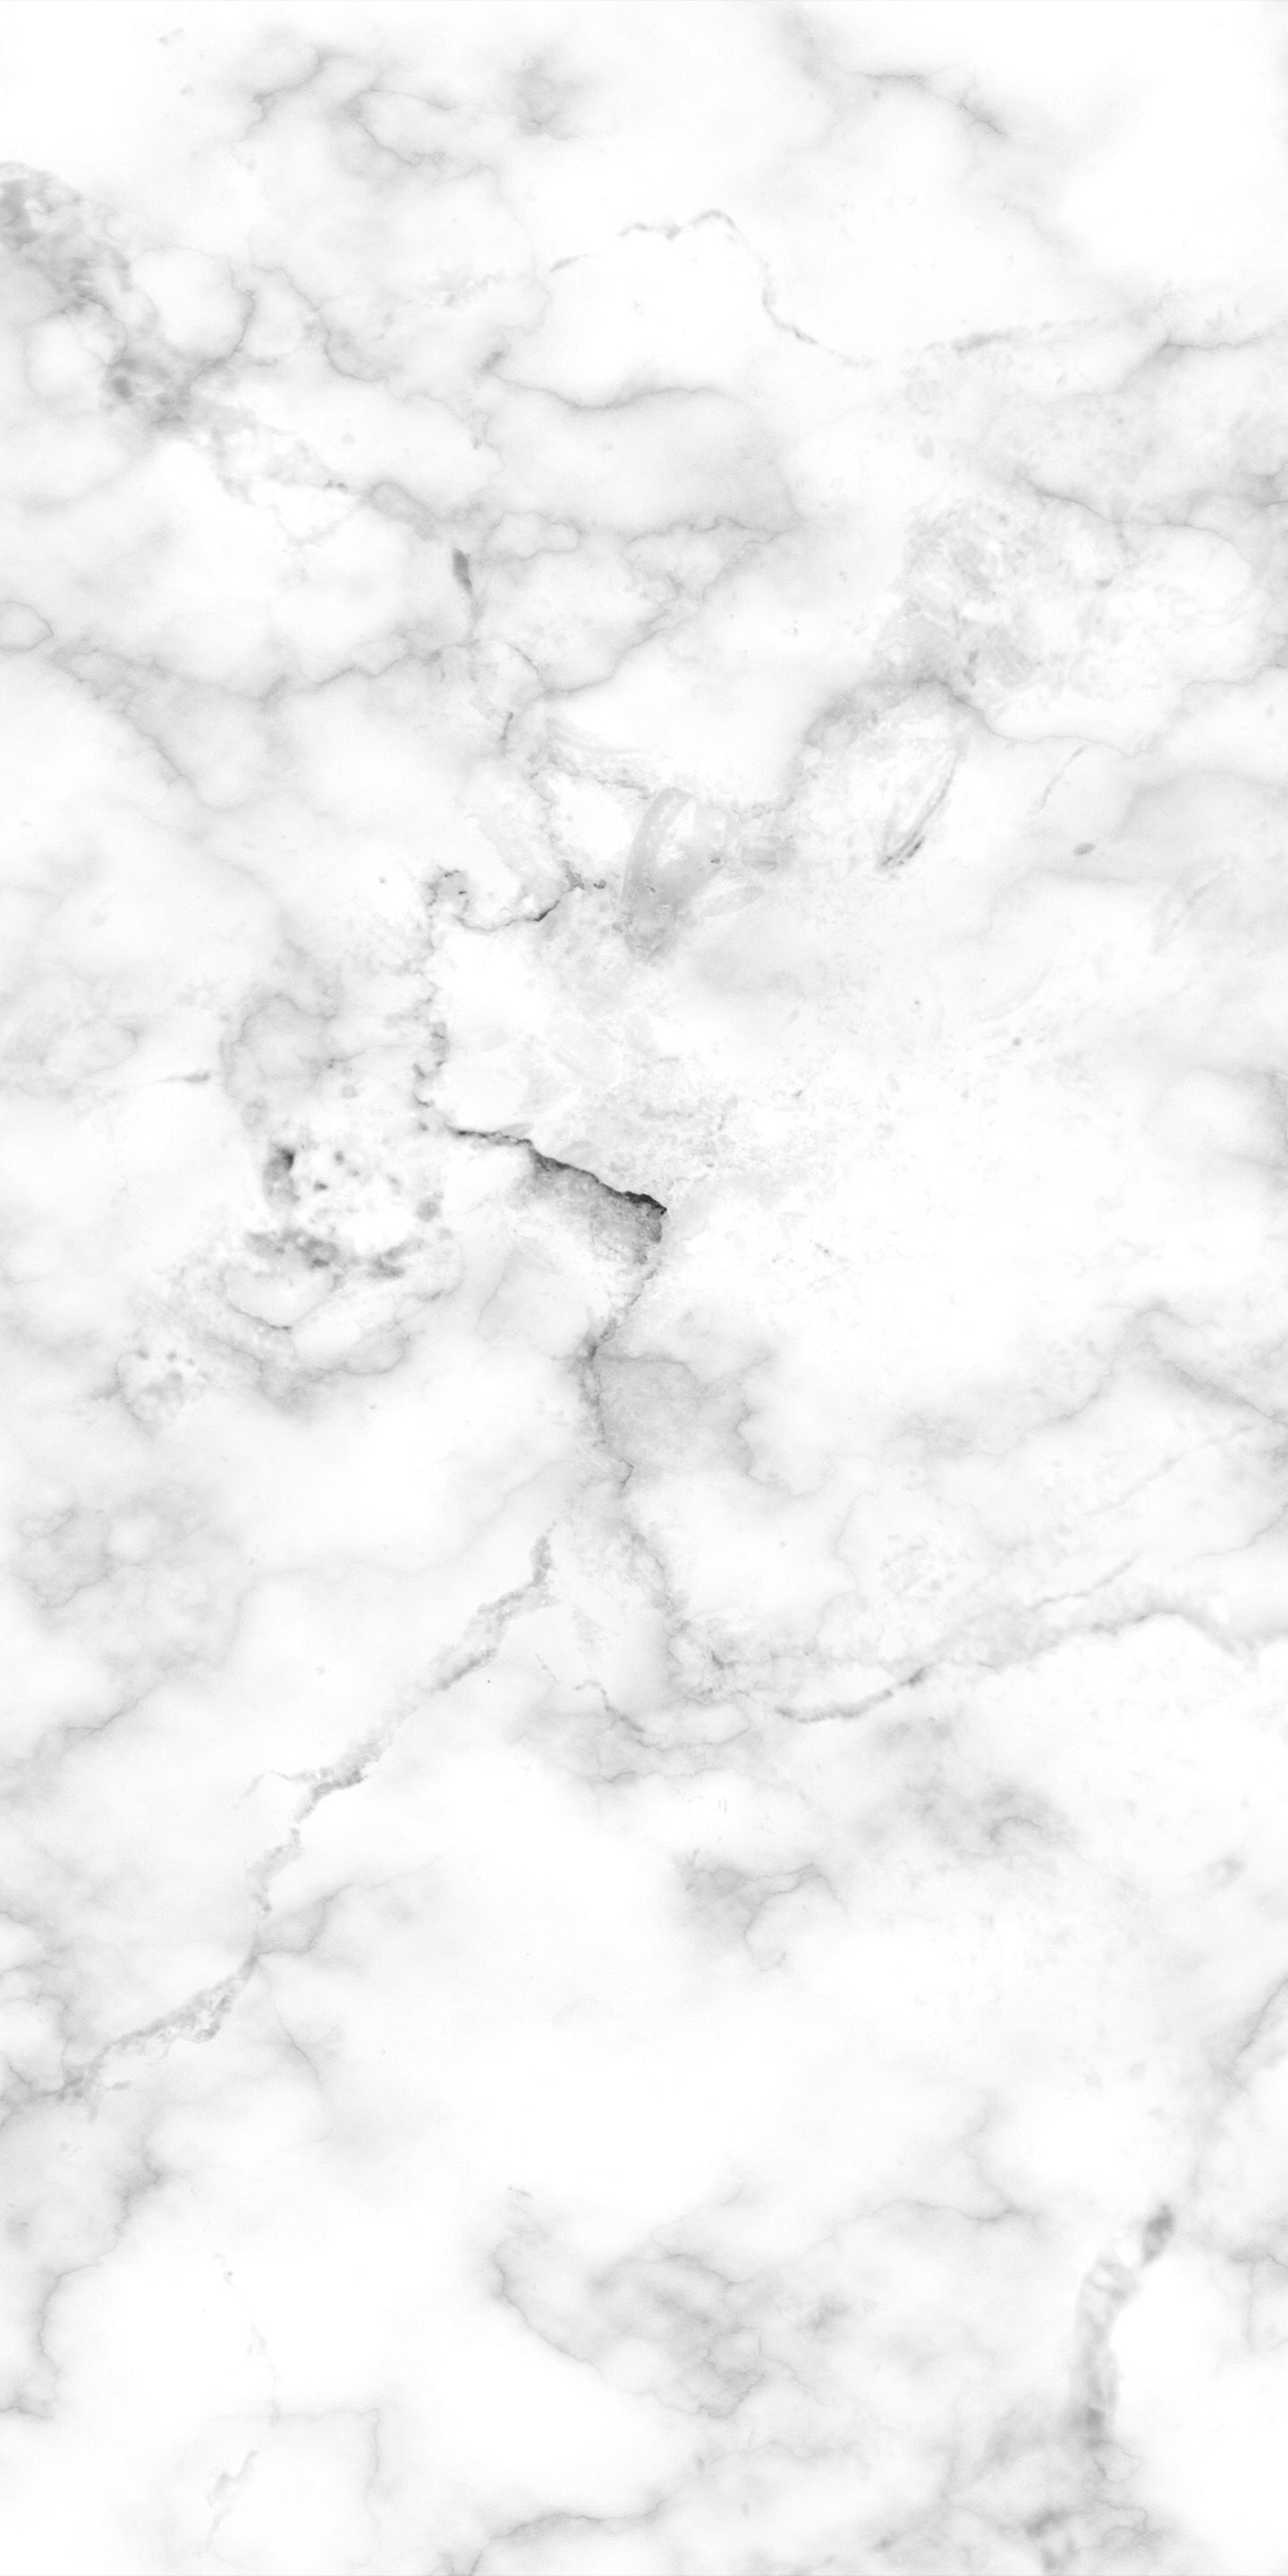 papier peint en marbre gris,blanc,ciel,monochrome,noir et blanc,nuage